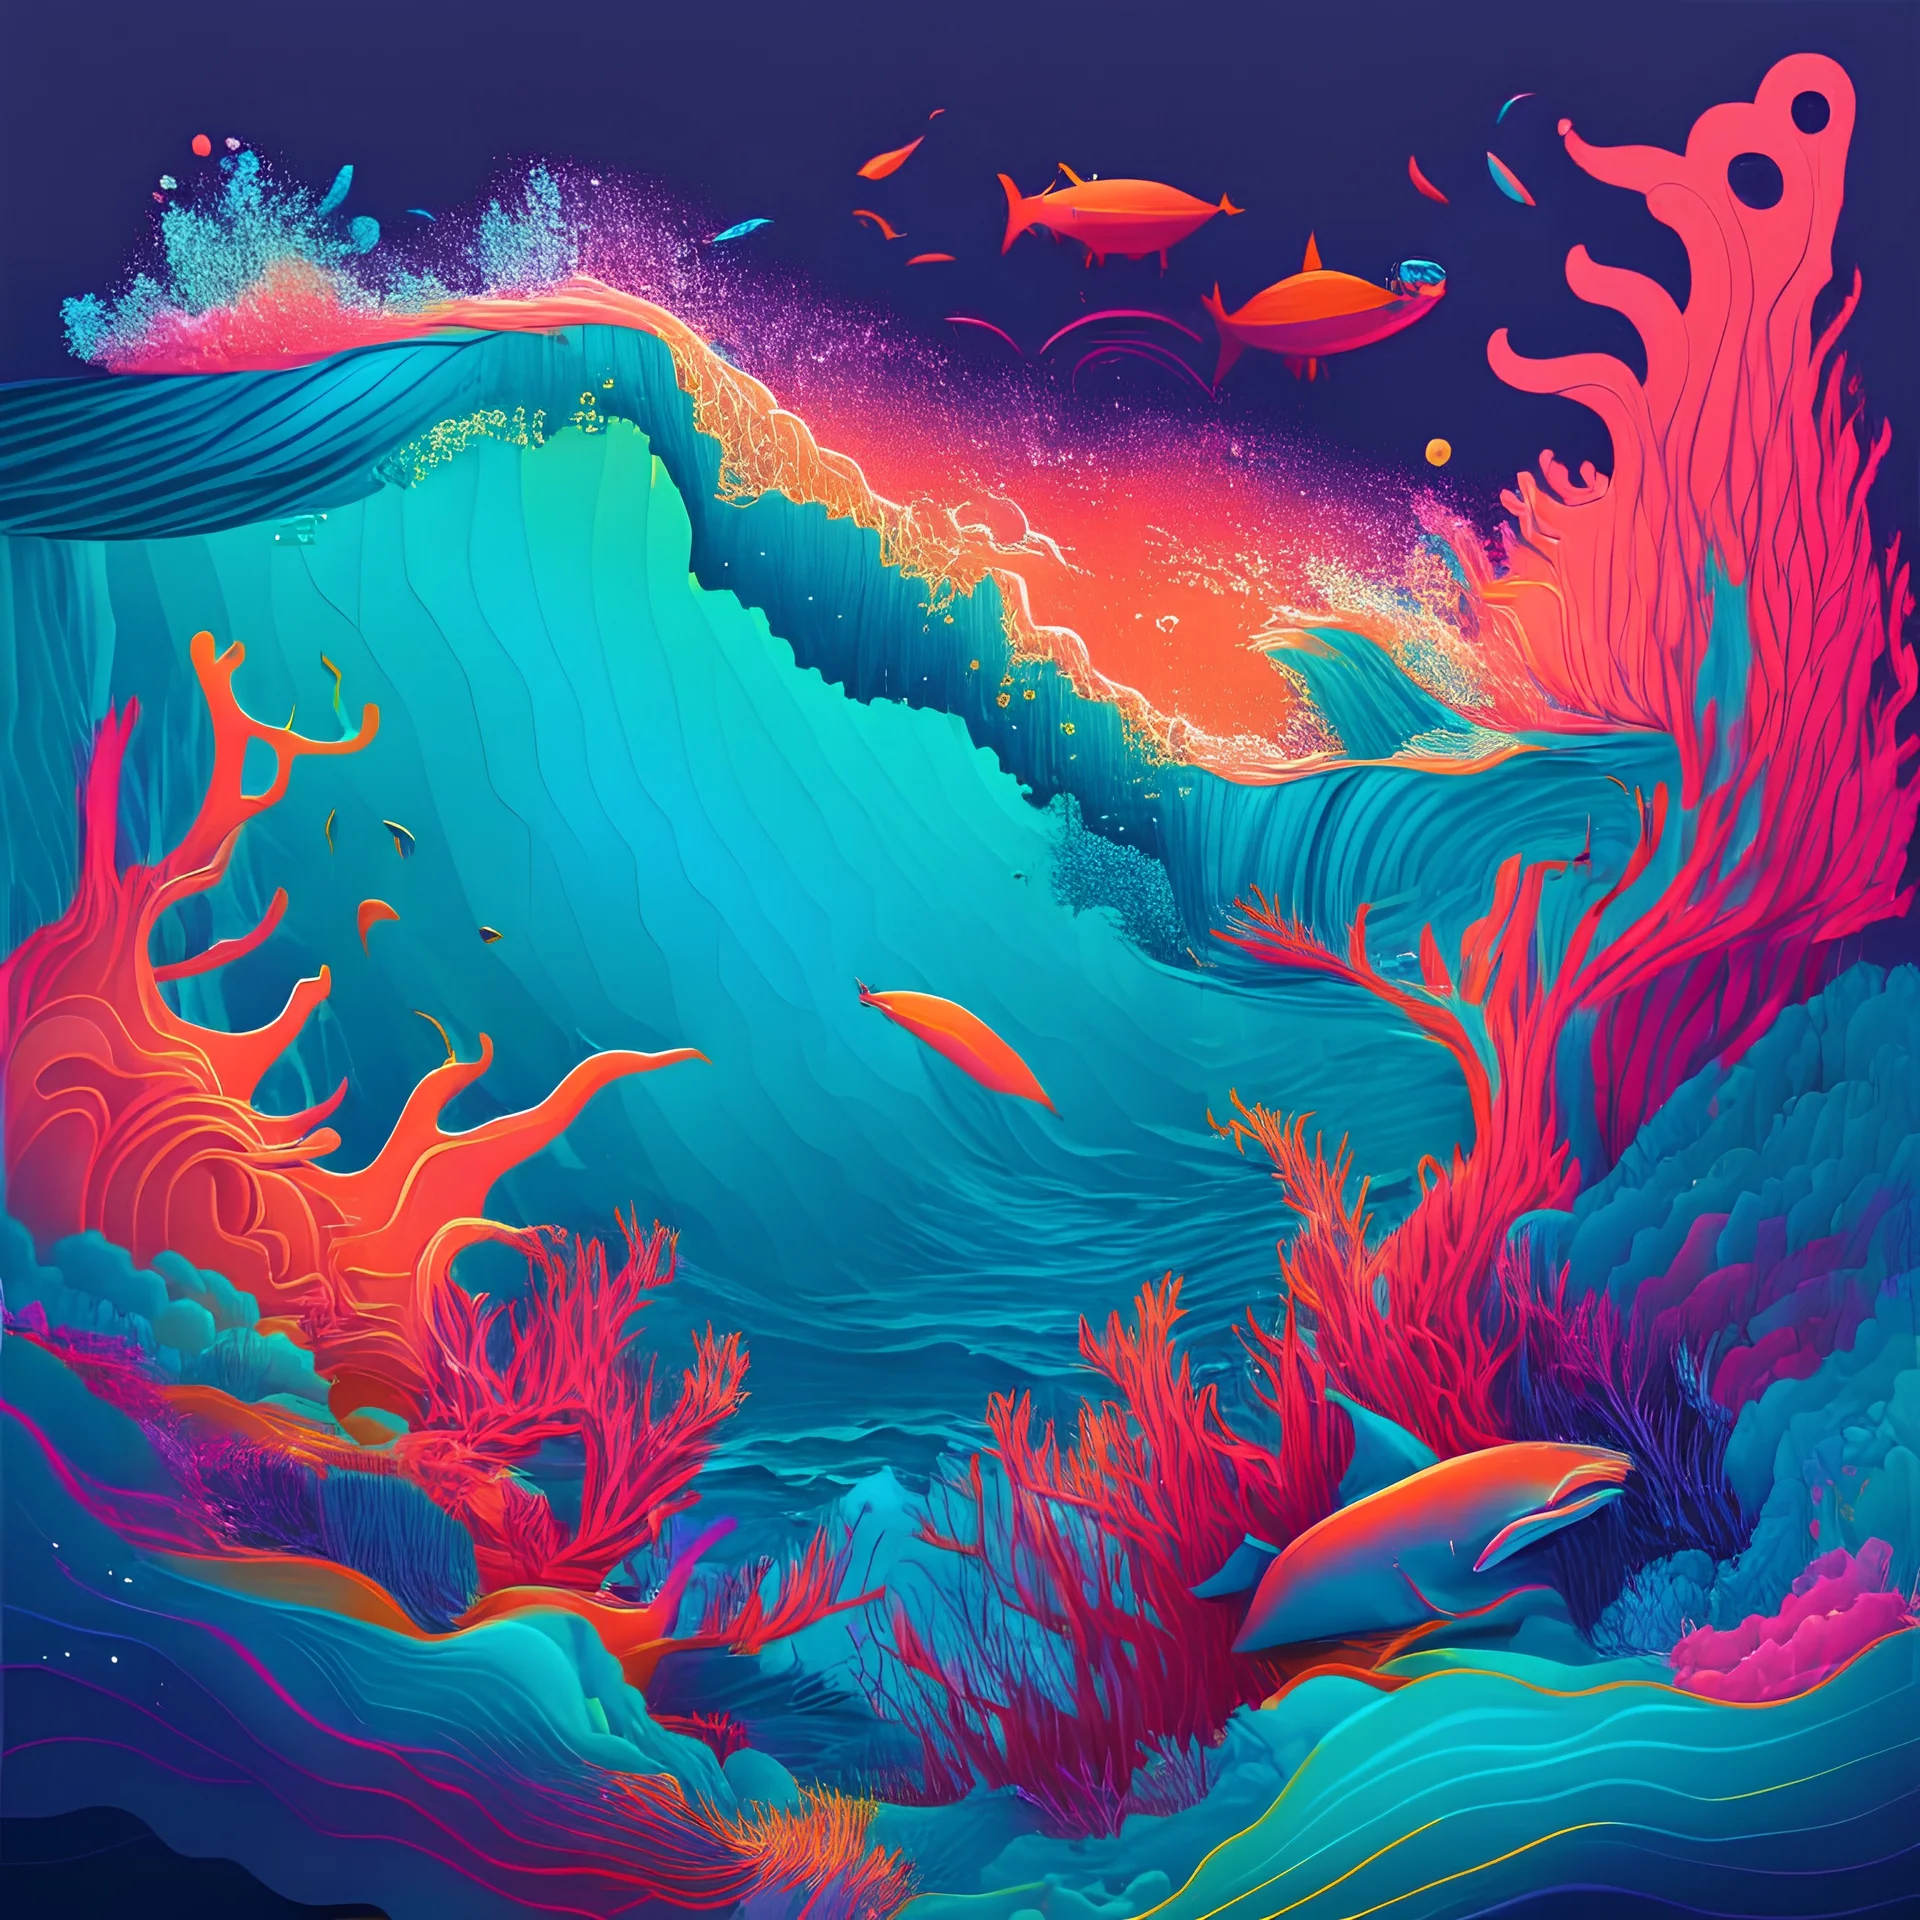 Vibrant ocean illustration